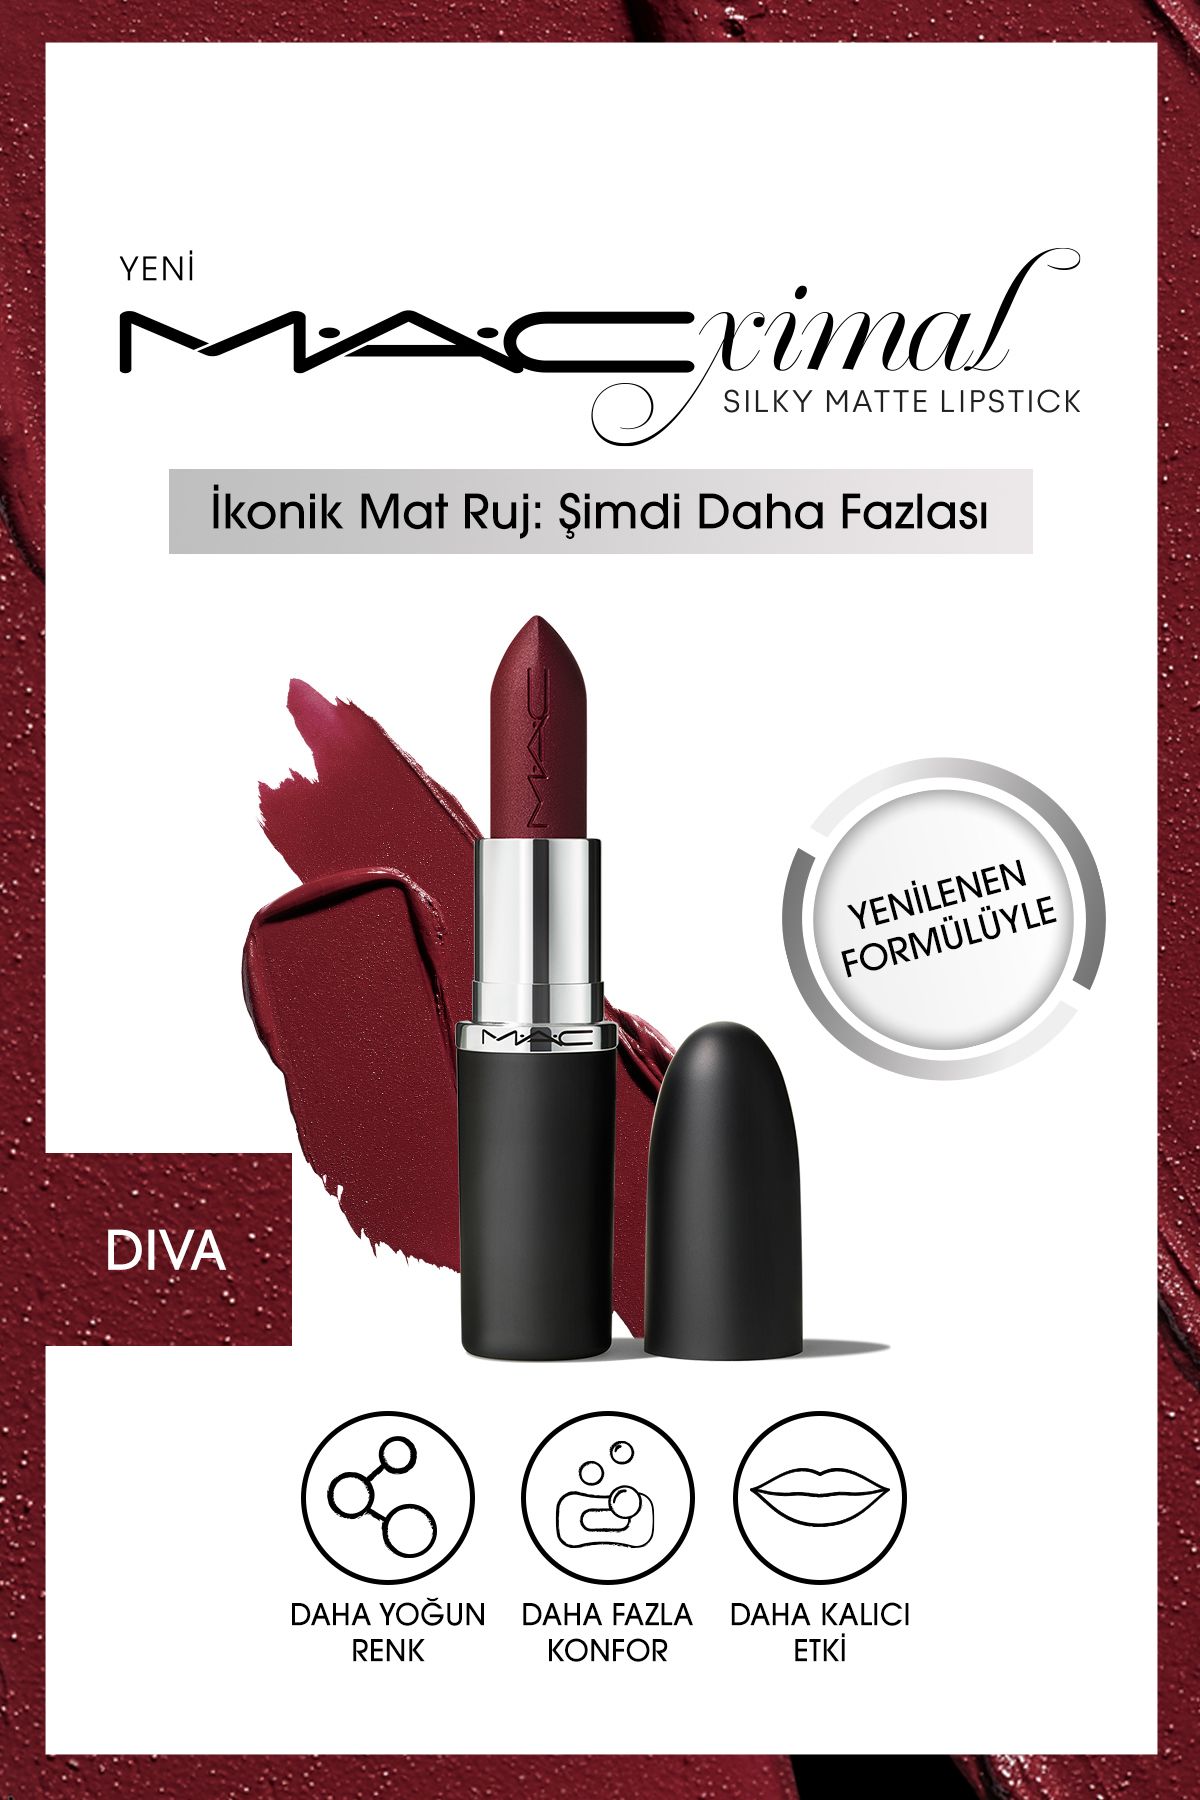 Mac YENİ Kalıcı - Diva - M·A·CXIMAL Silky Matte Lipstick Nemlendirme Etkili Ruj 3,5 g